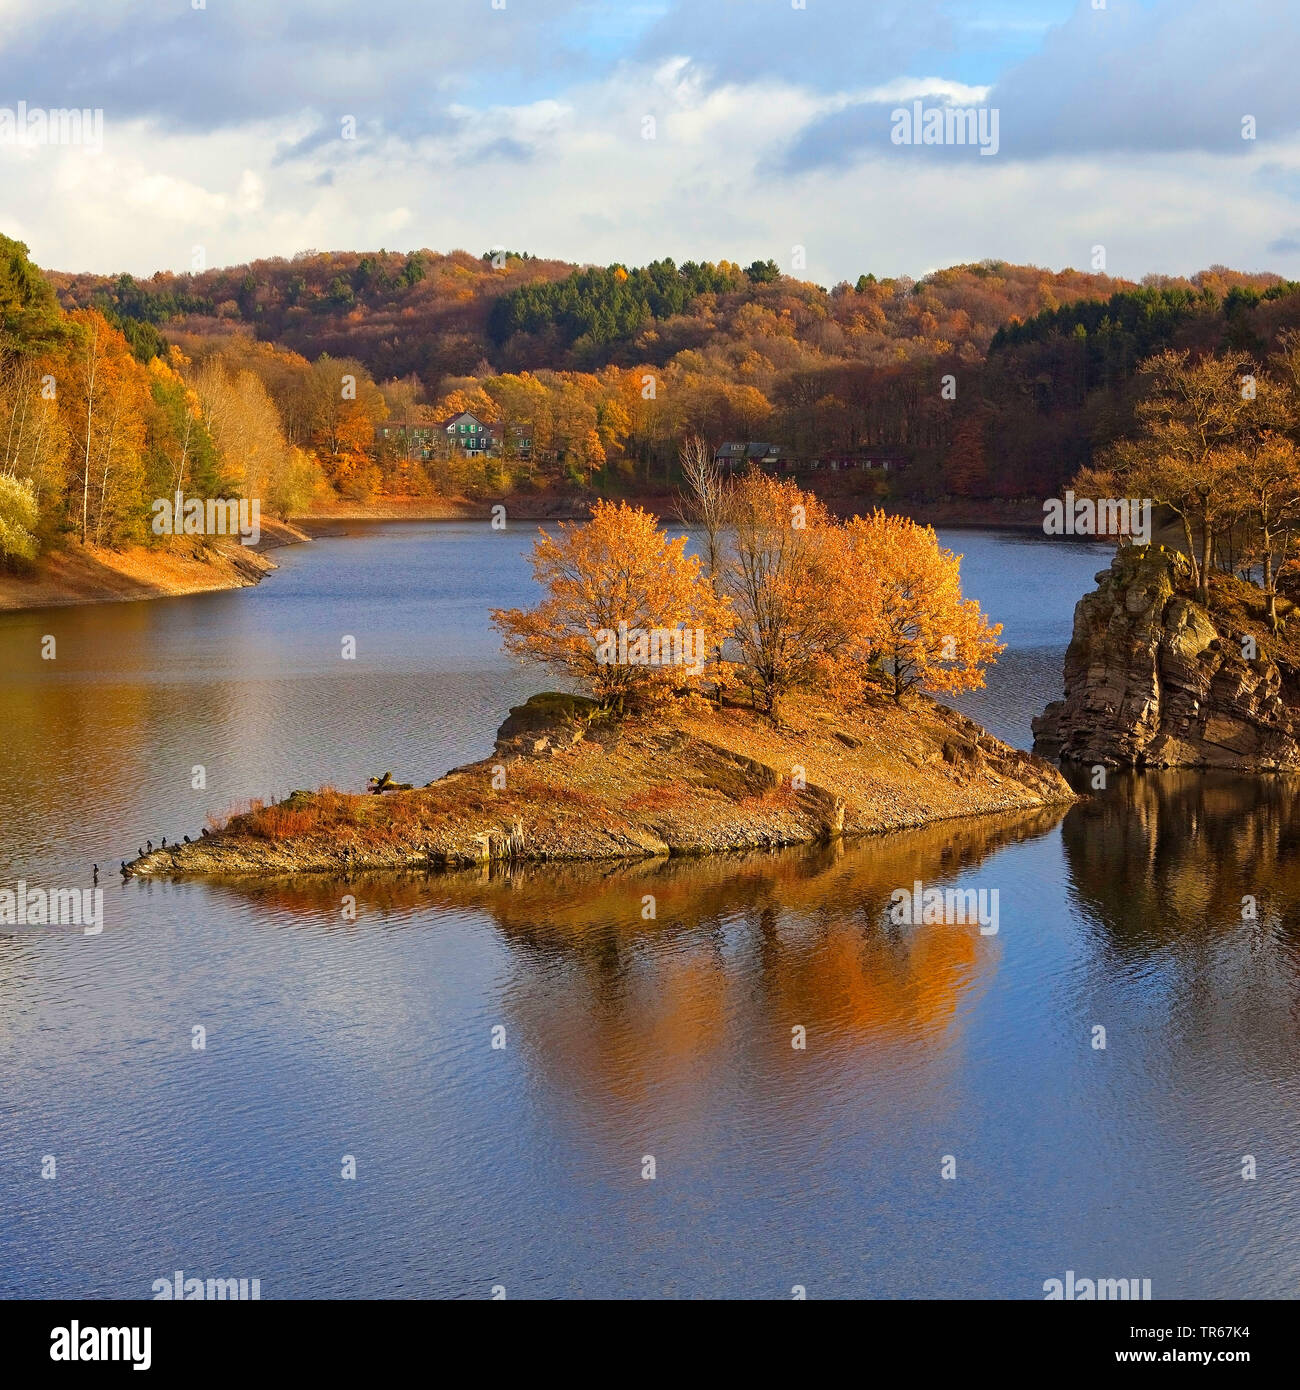 storage lake Wuppertalsperre in autumn, Germany, North Rhine-Westphalia, Bergisches Land, Remscheid Stock Photo